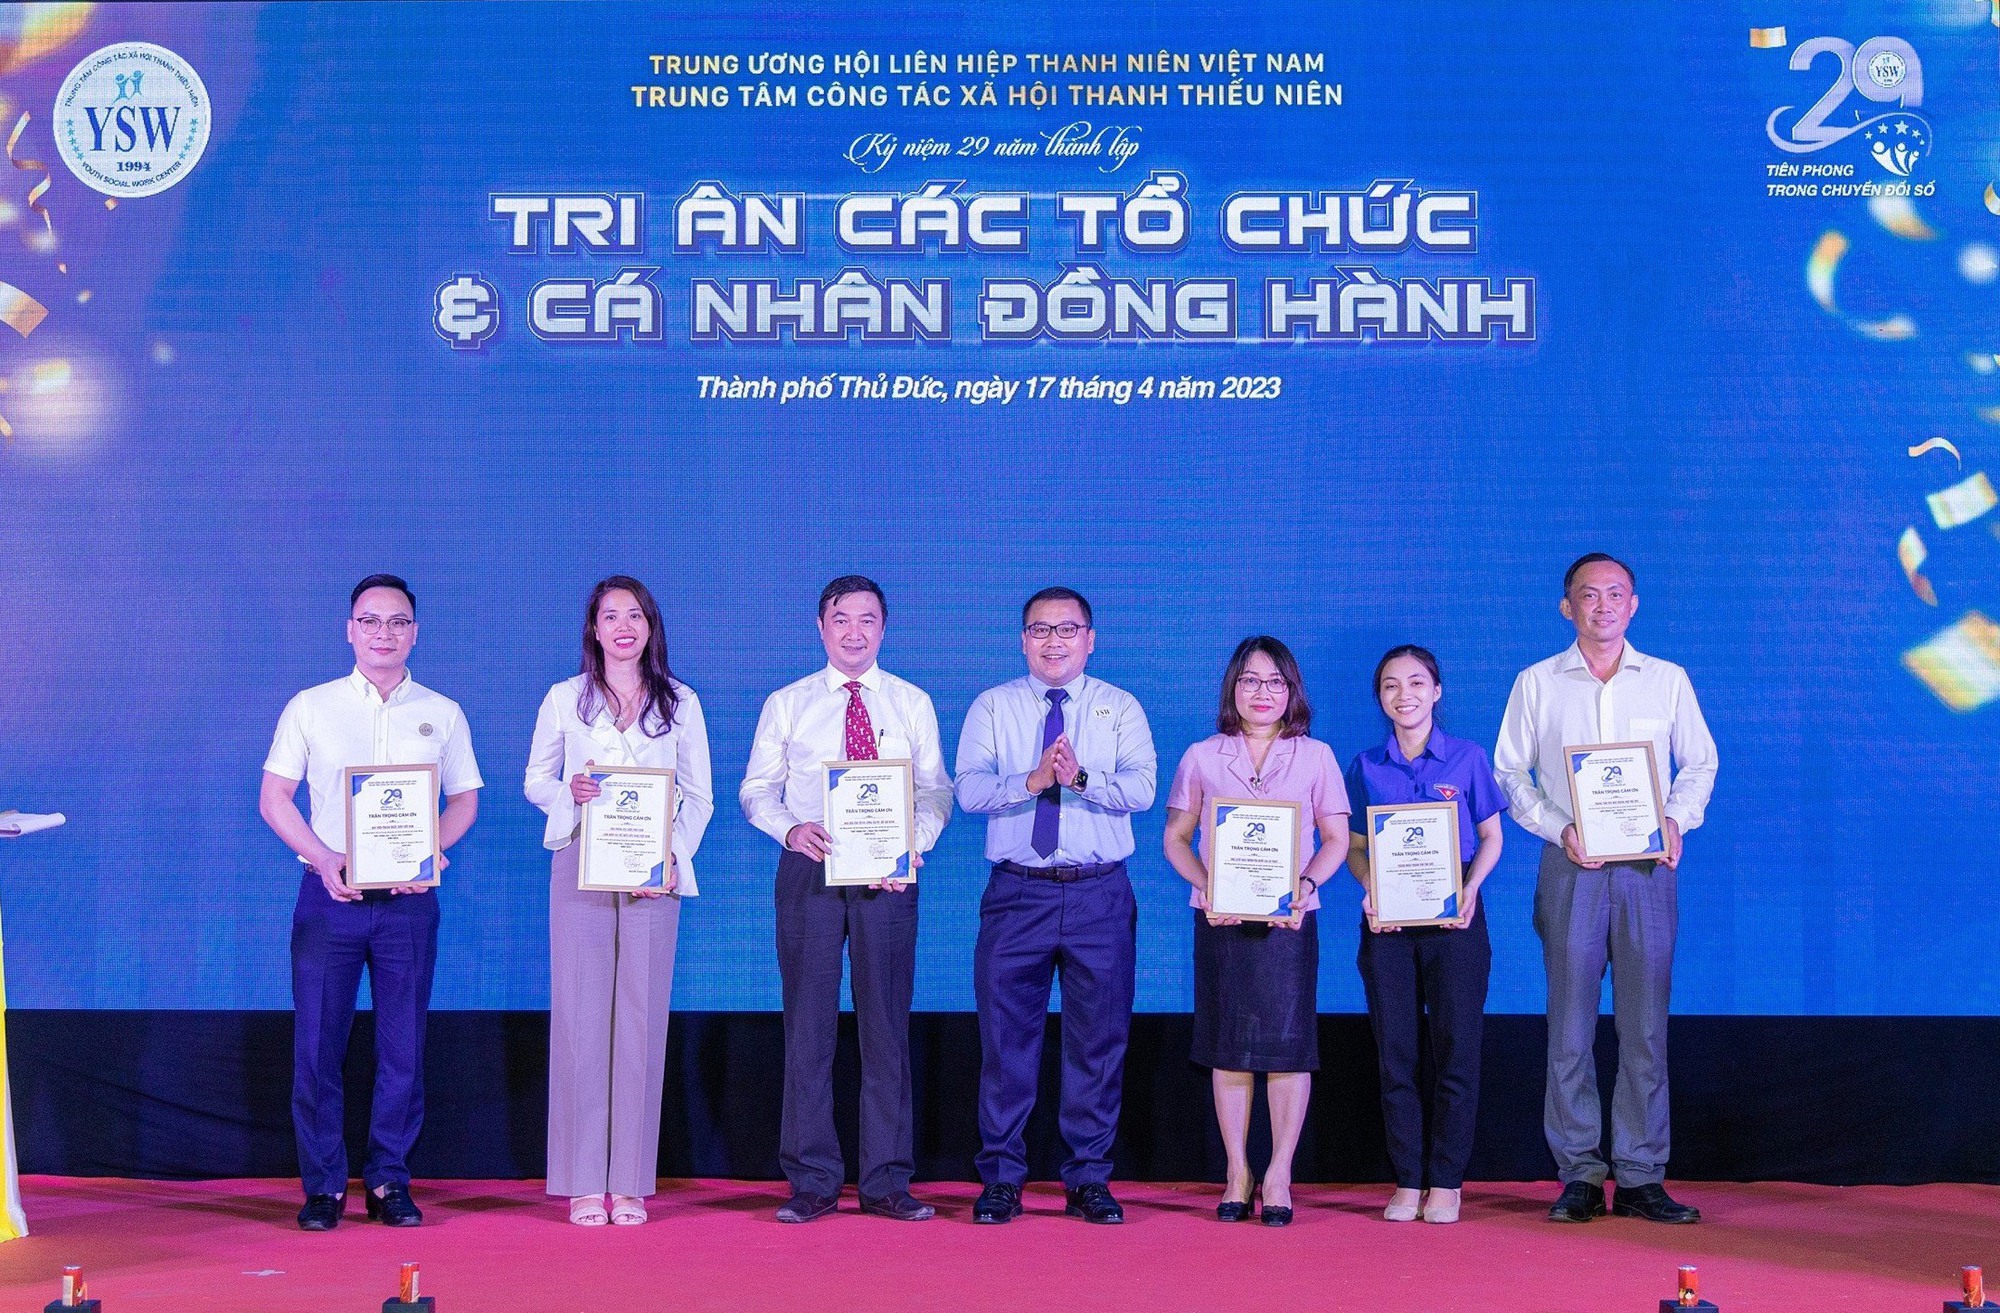 Chuyển đổi số công tác xã hội: Thành lập Cộng đồng công tác xã hội Việt Nam - Ảnh 3.